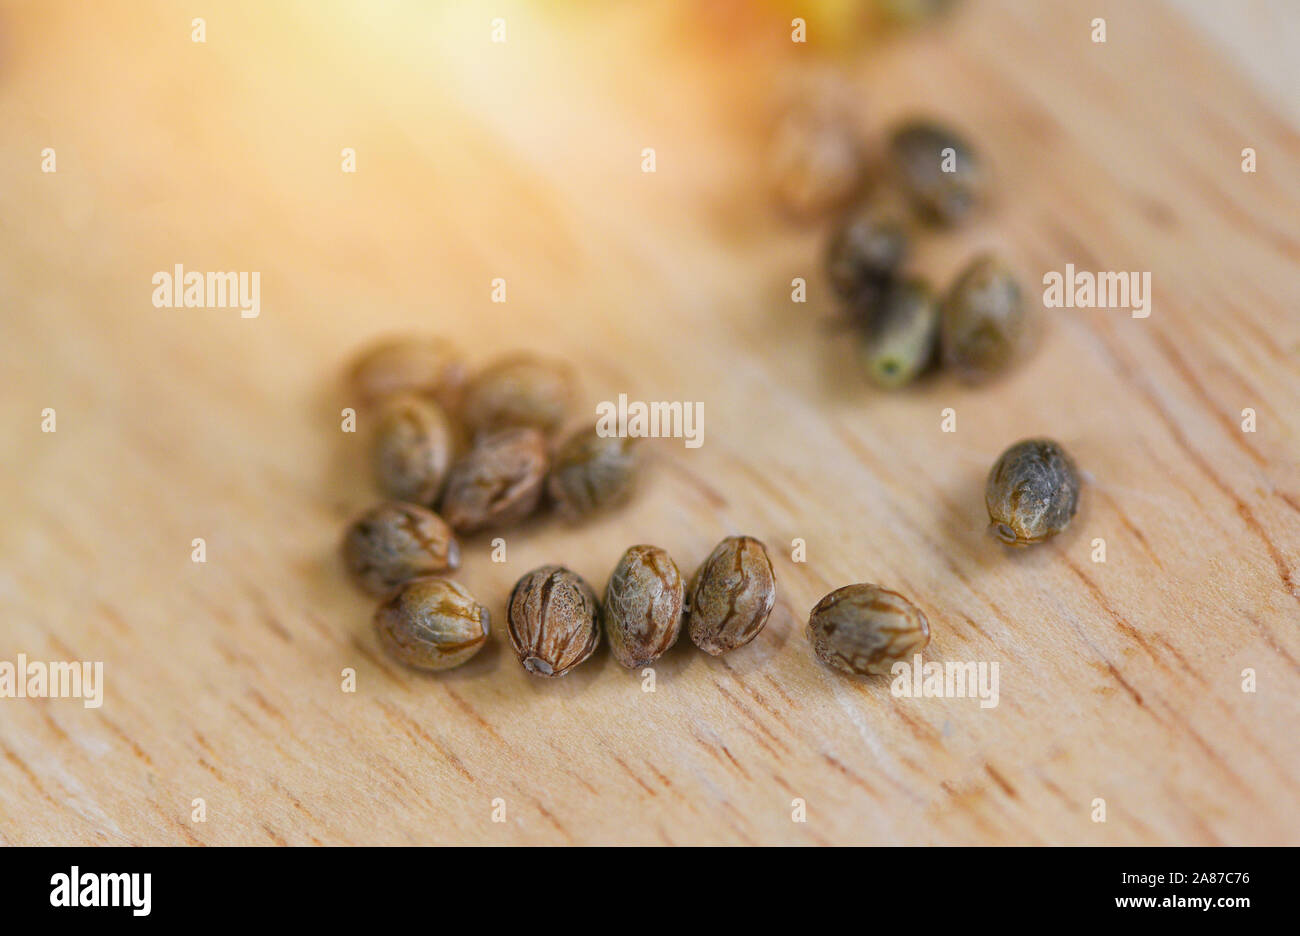 Nahaufnahme von Marihuana samen oder Hanf Cannabis Samen auf Holz- Hintergrund, selektiver Fokus Stockfoto